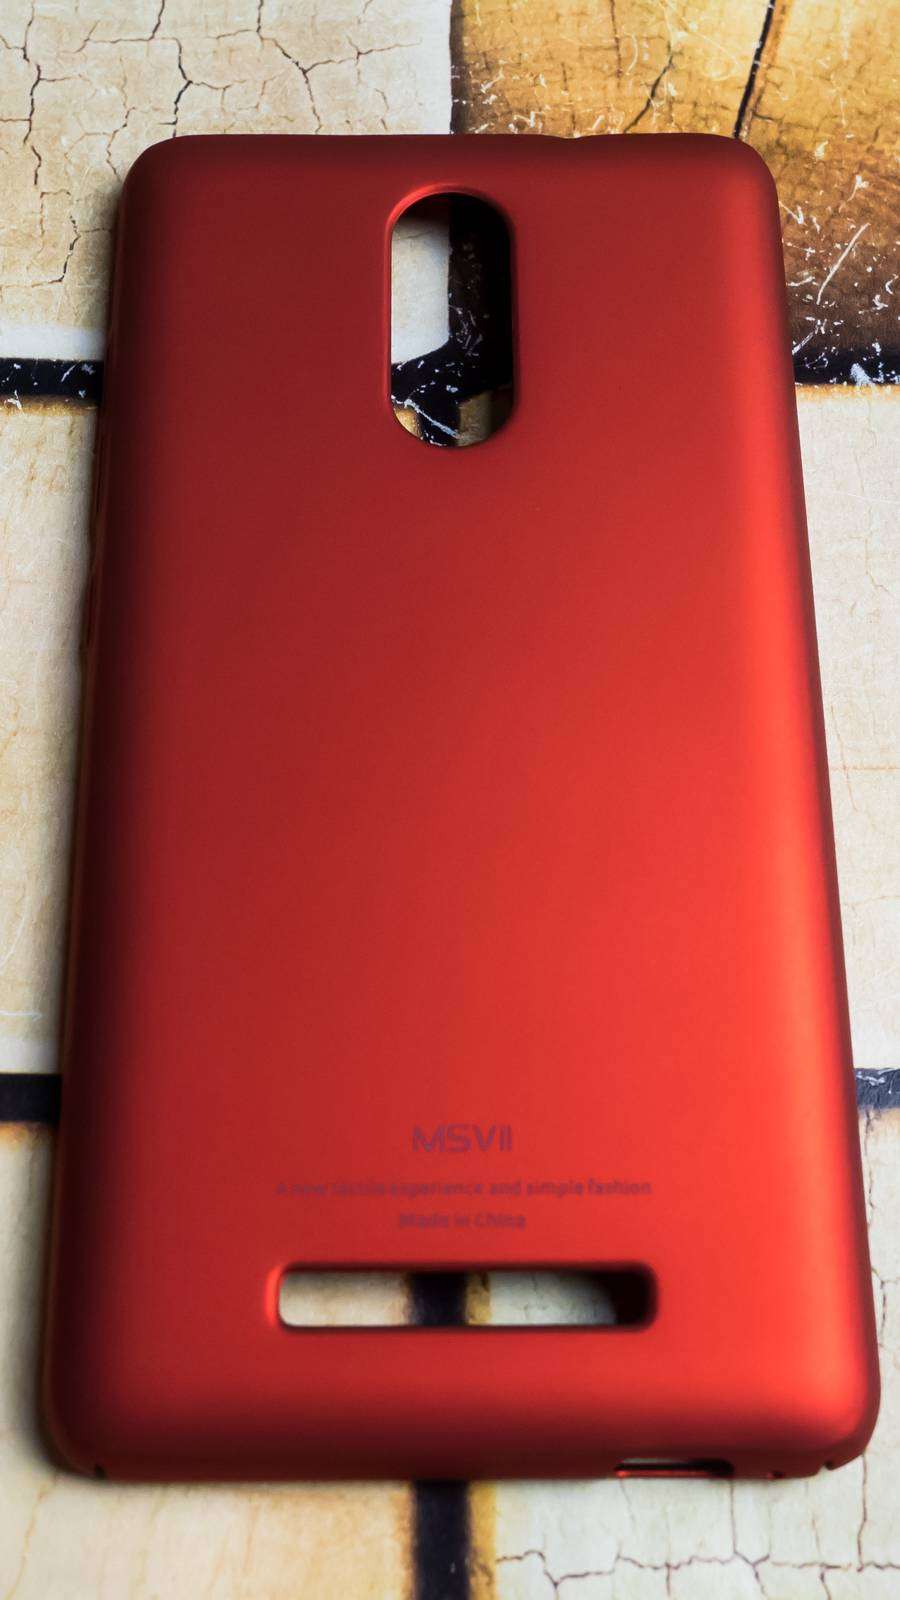 Aliexpress: Бампер Msvii для Xiaomi Redmi Note 3